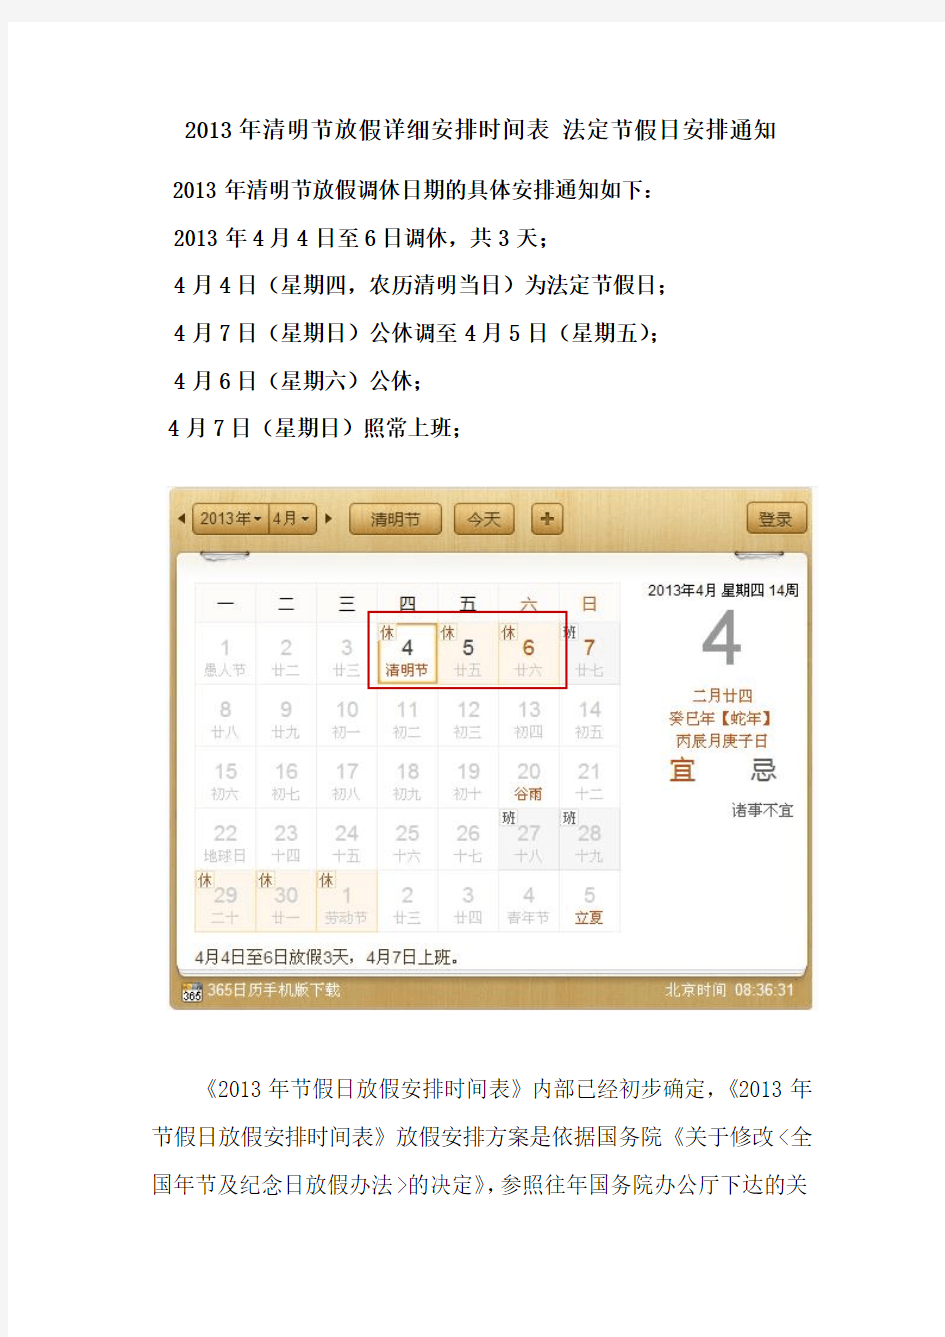 2013年清明节放假详细安排时间表 法定节假日安排通知